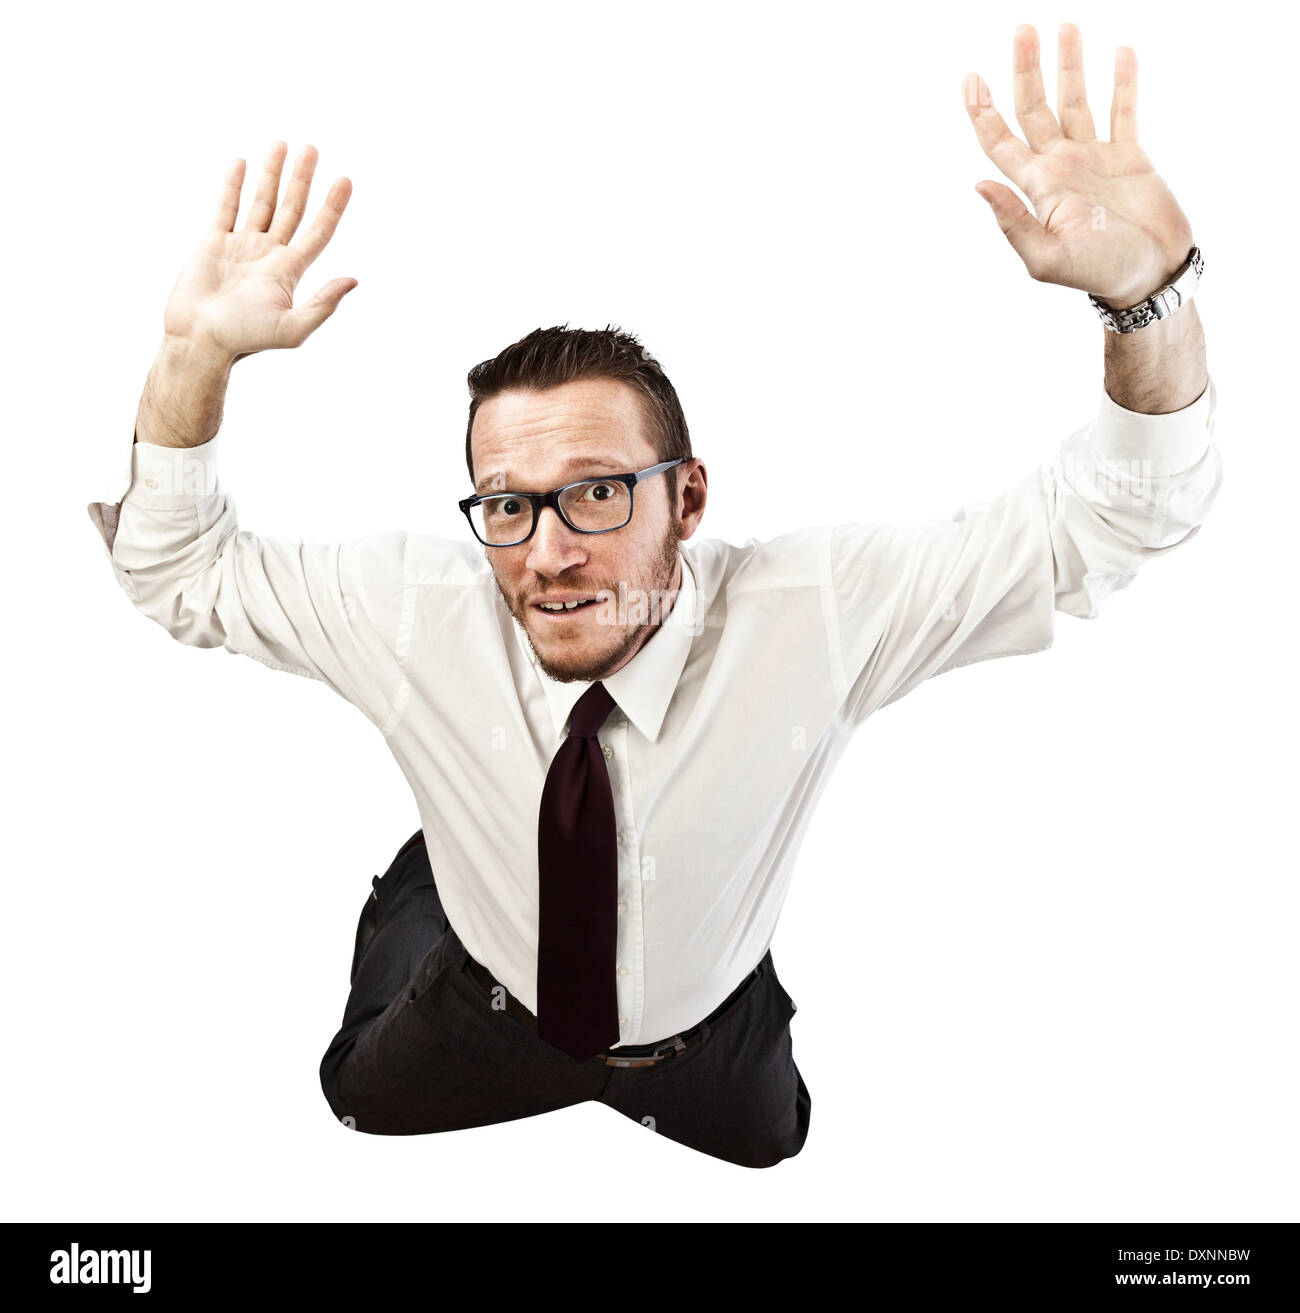 falling businessman isolated on white background Stock Photo